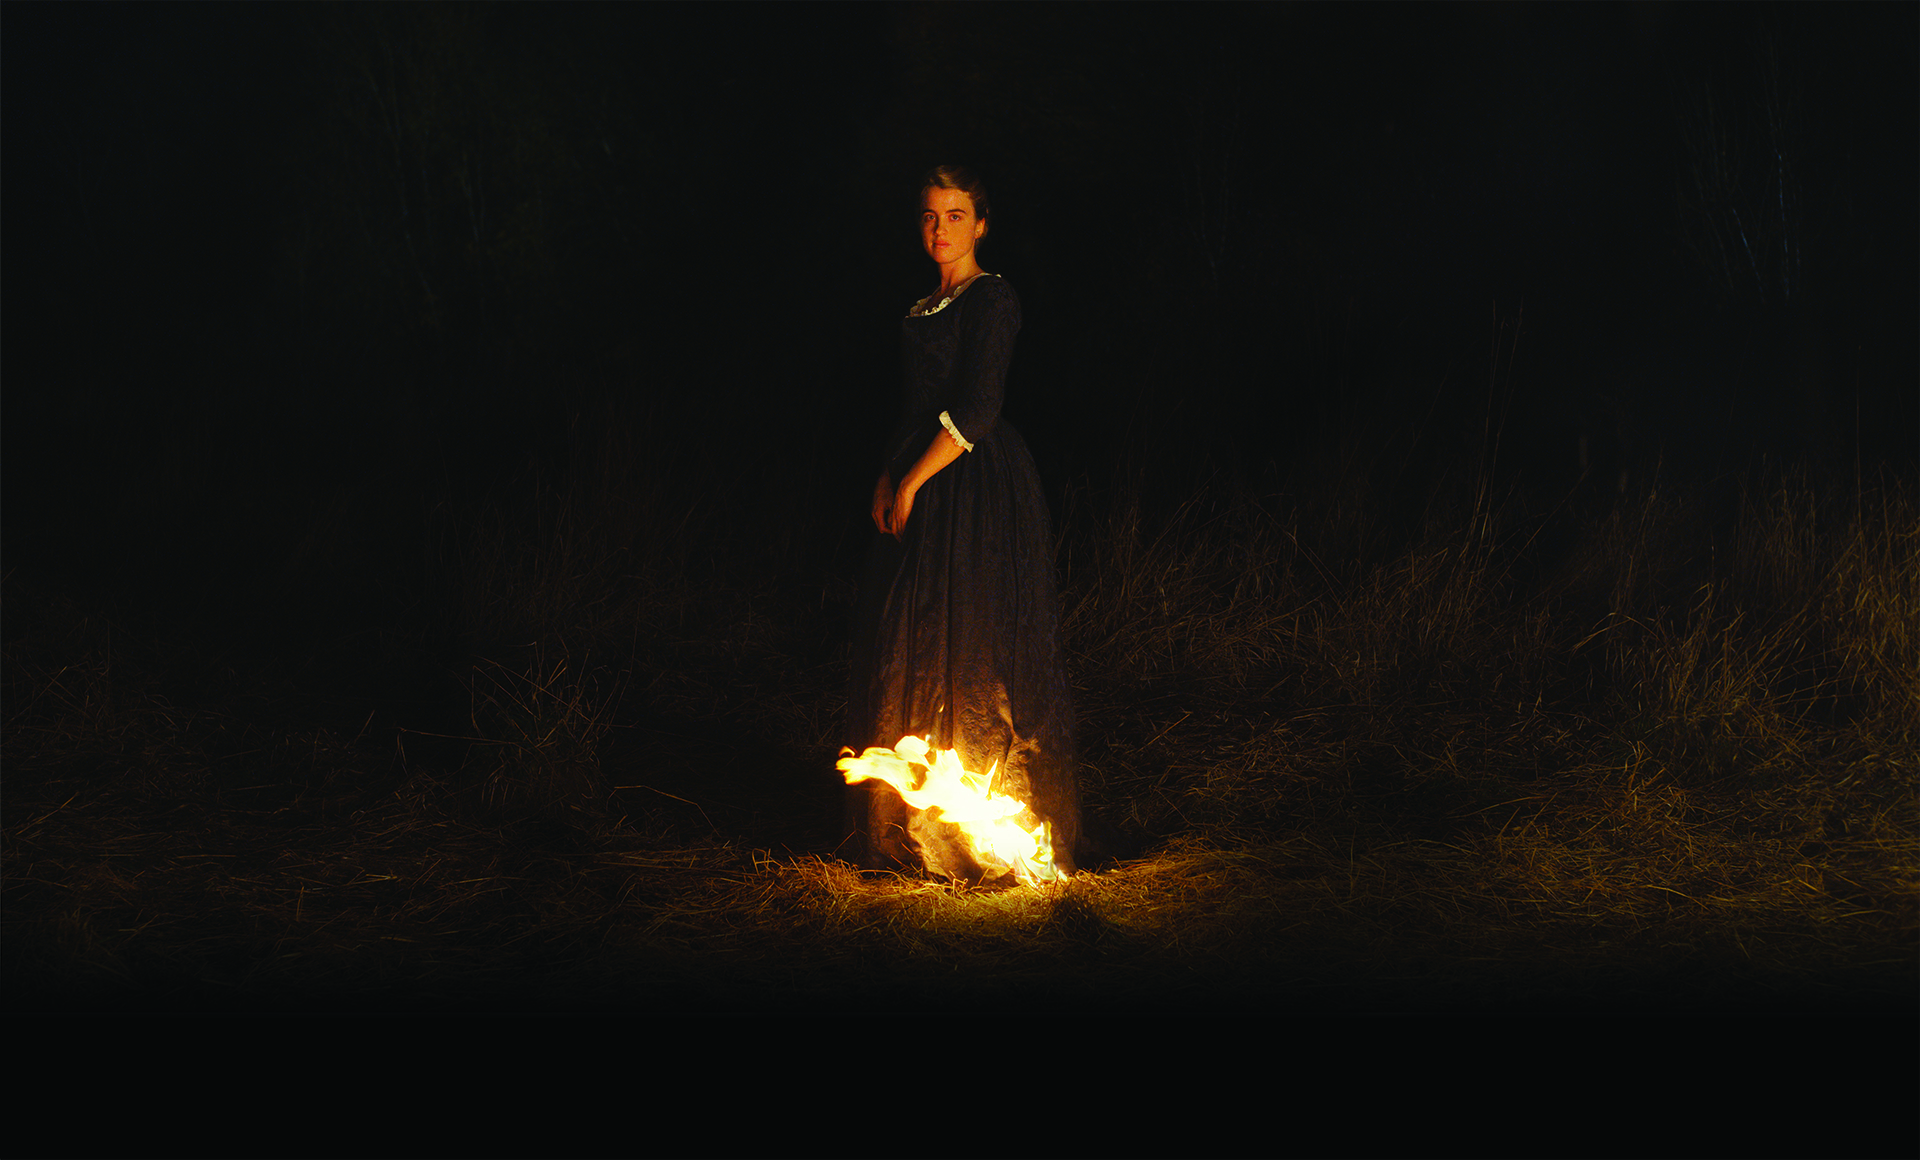 Lecznica filmowa: Portret kobiety w ogniu